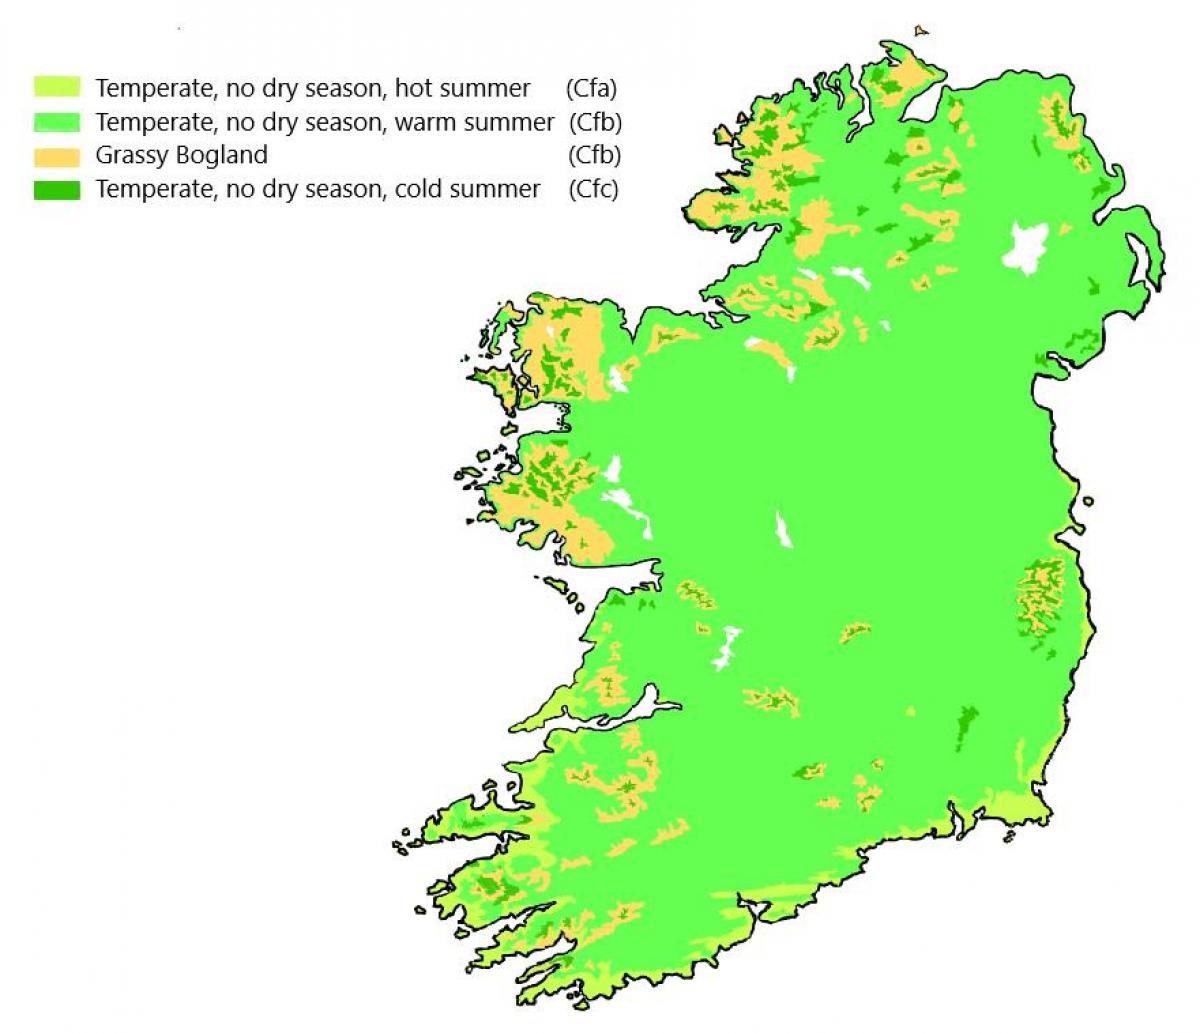 Mapa de temperatura de Irlanda